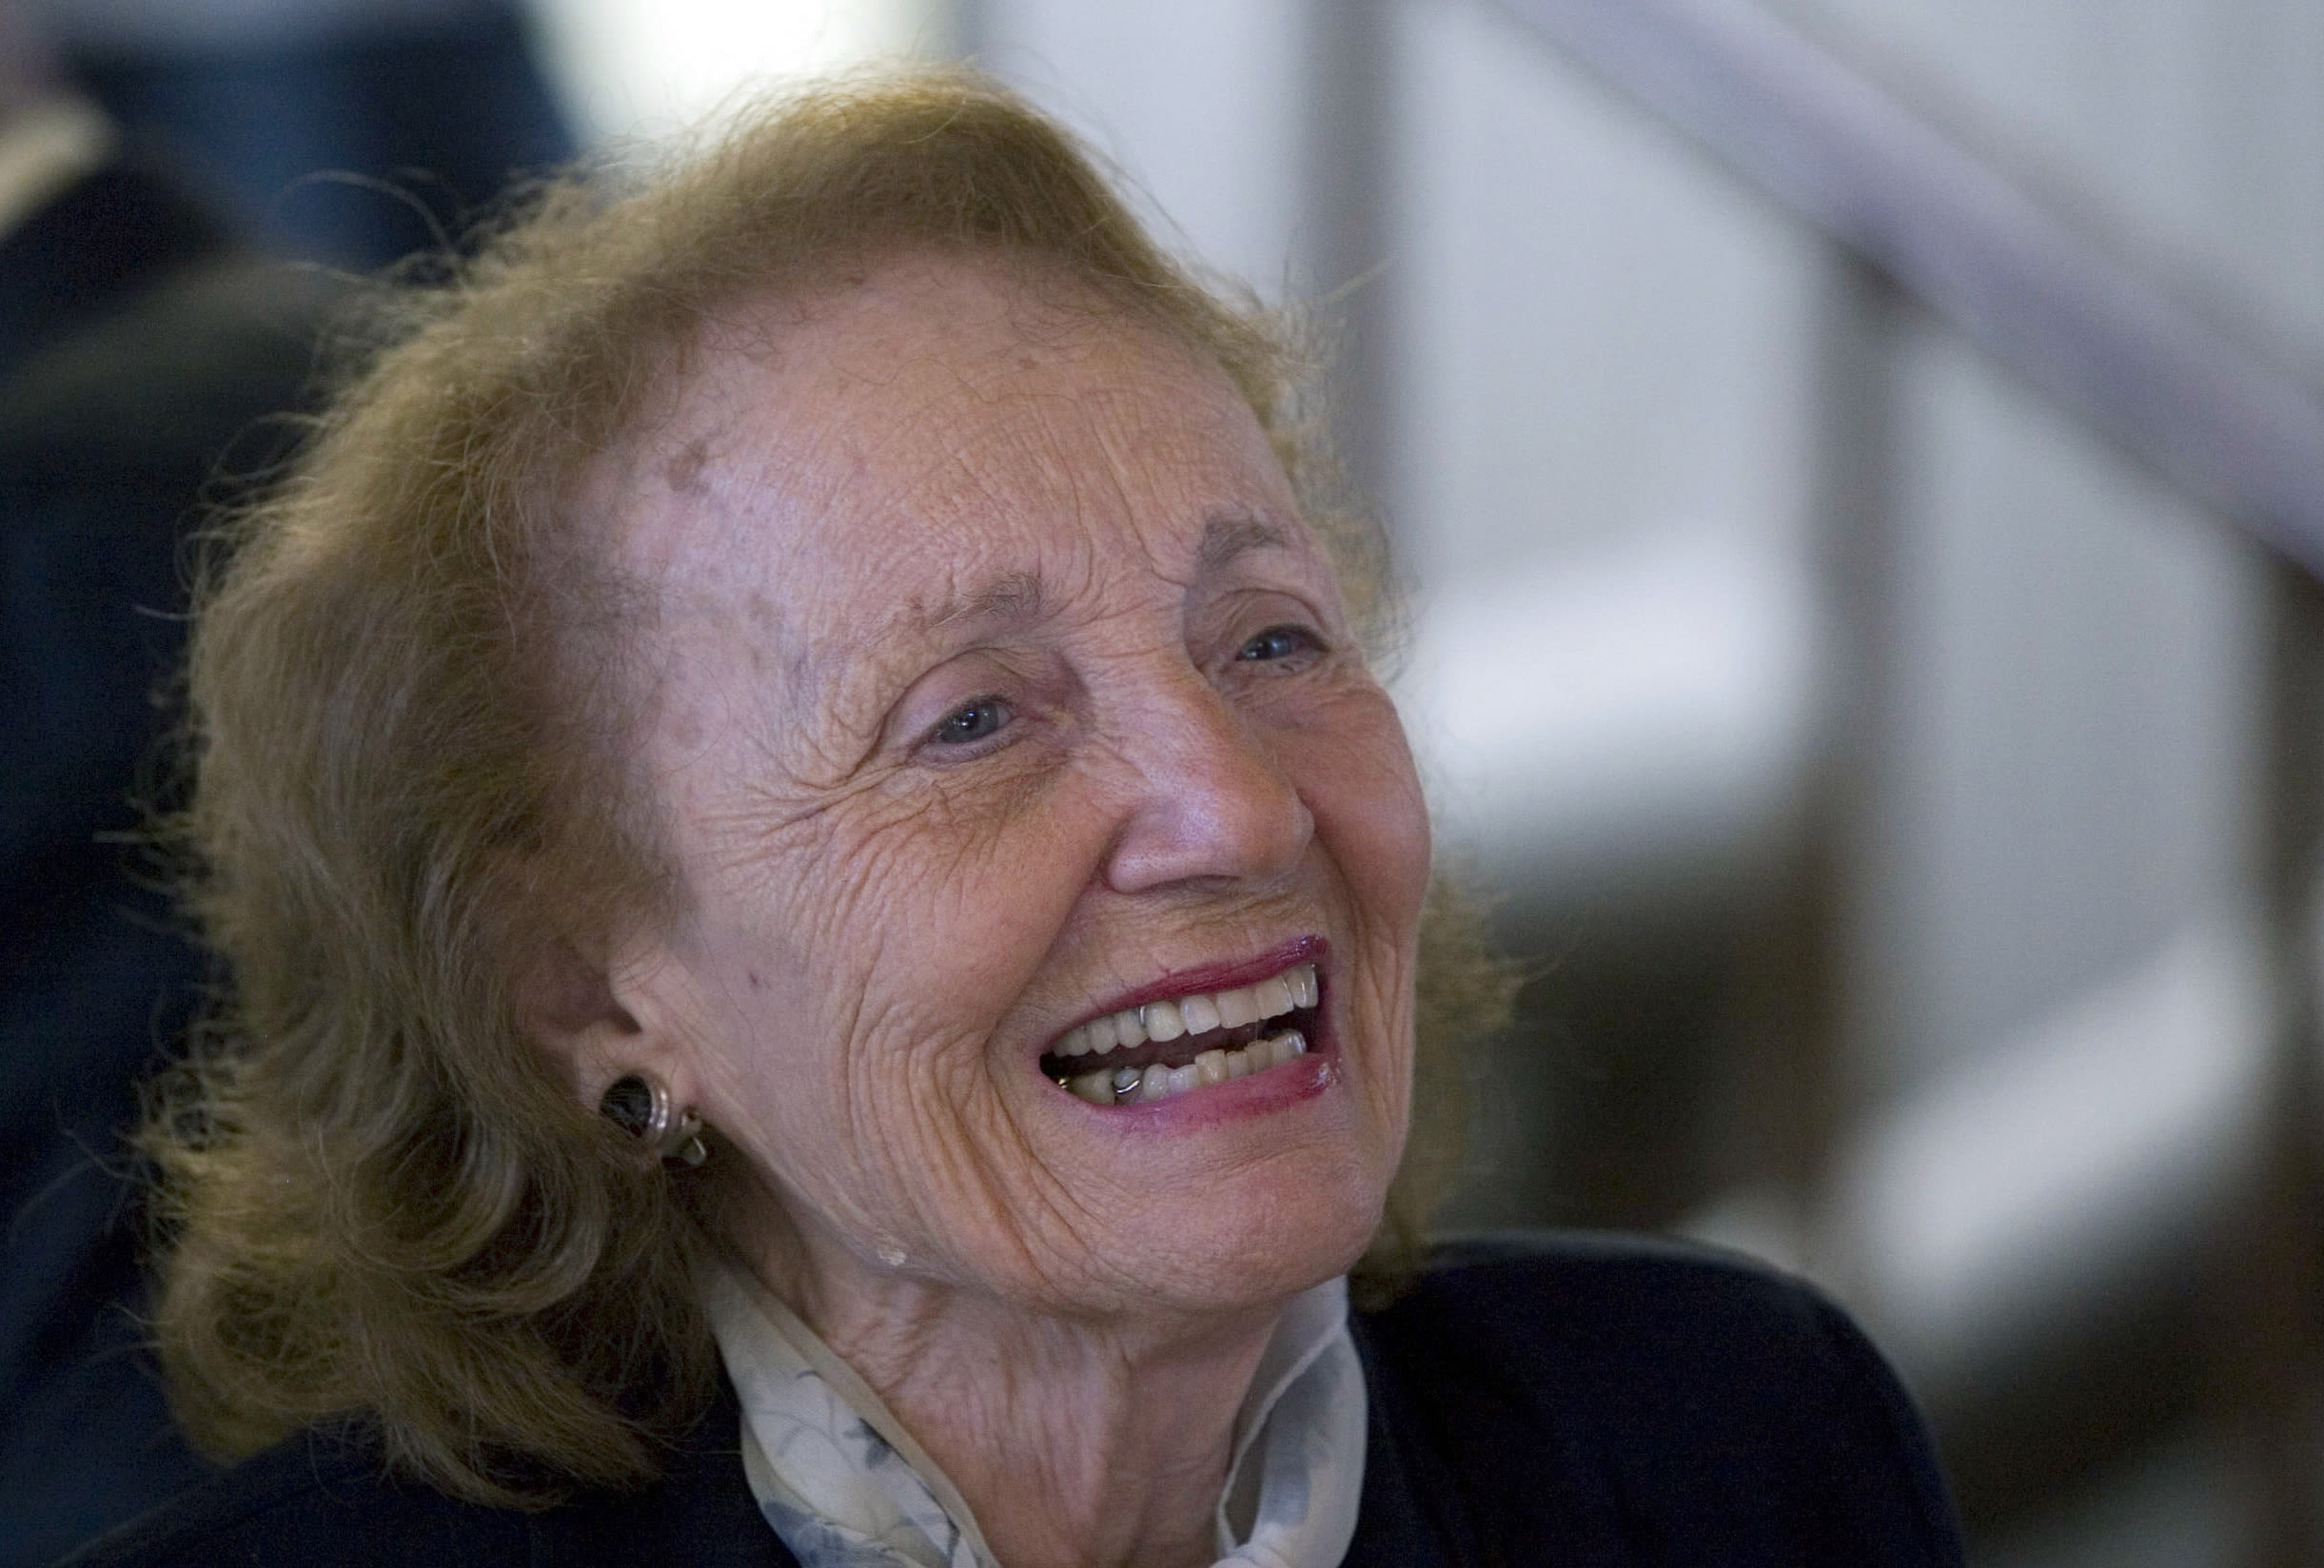 Mirta Díaz-Balart, wife of Fidel Castro before Cuban revolution, dies at 95